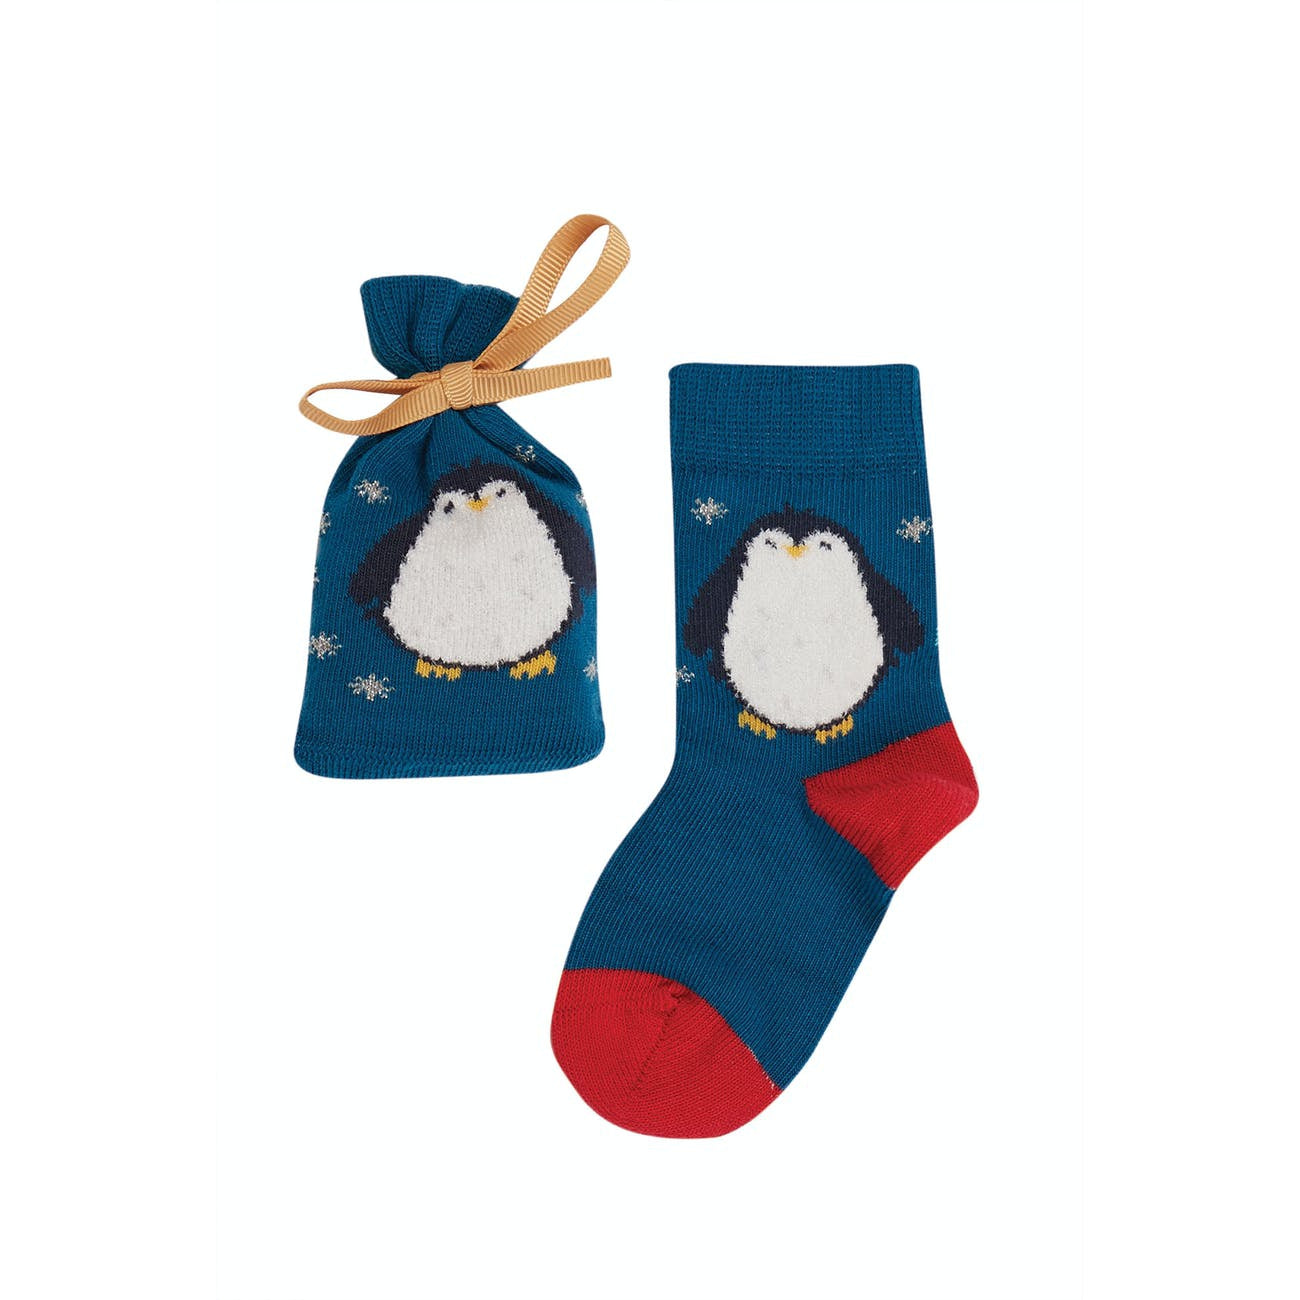 Super Socks in a Bag - Loch Blue / Penguin-Frugi-Modern Rascals